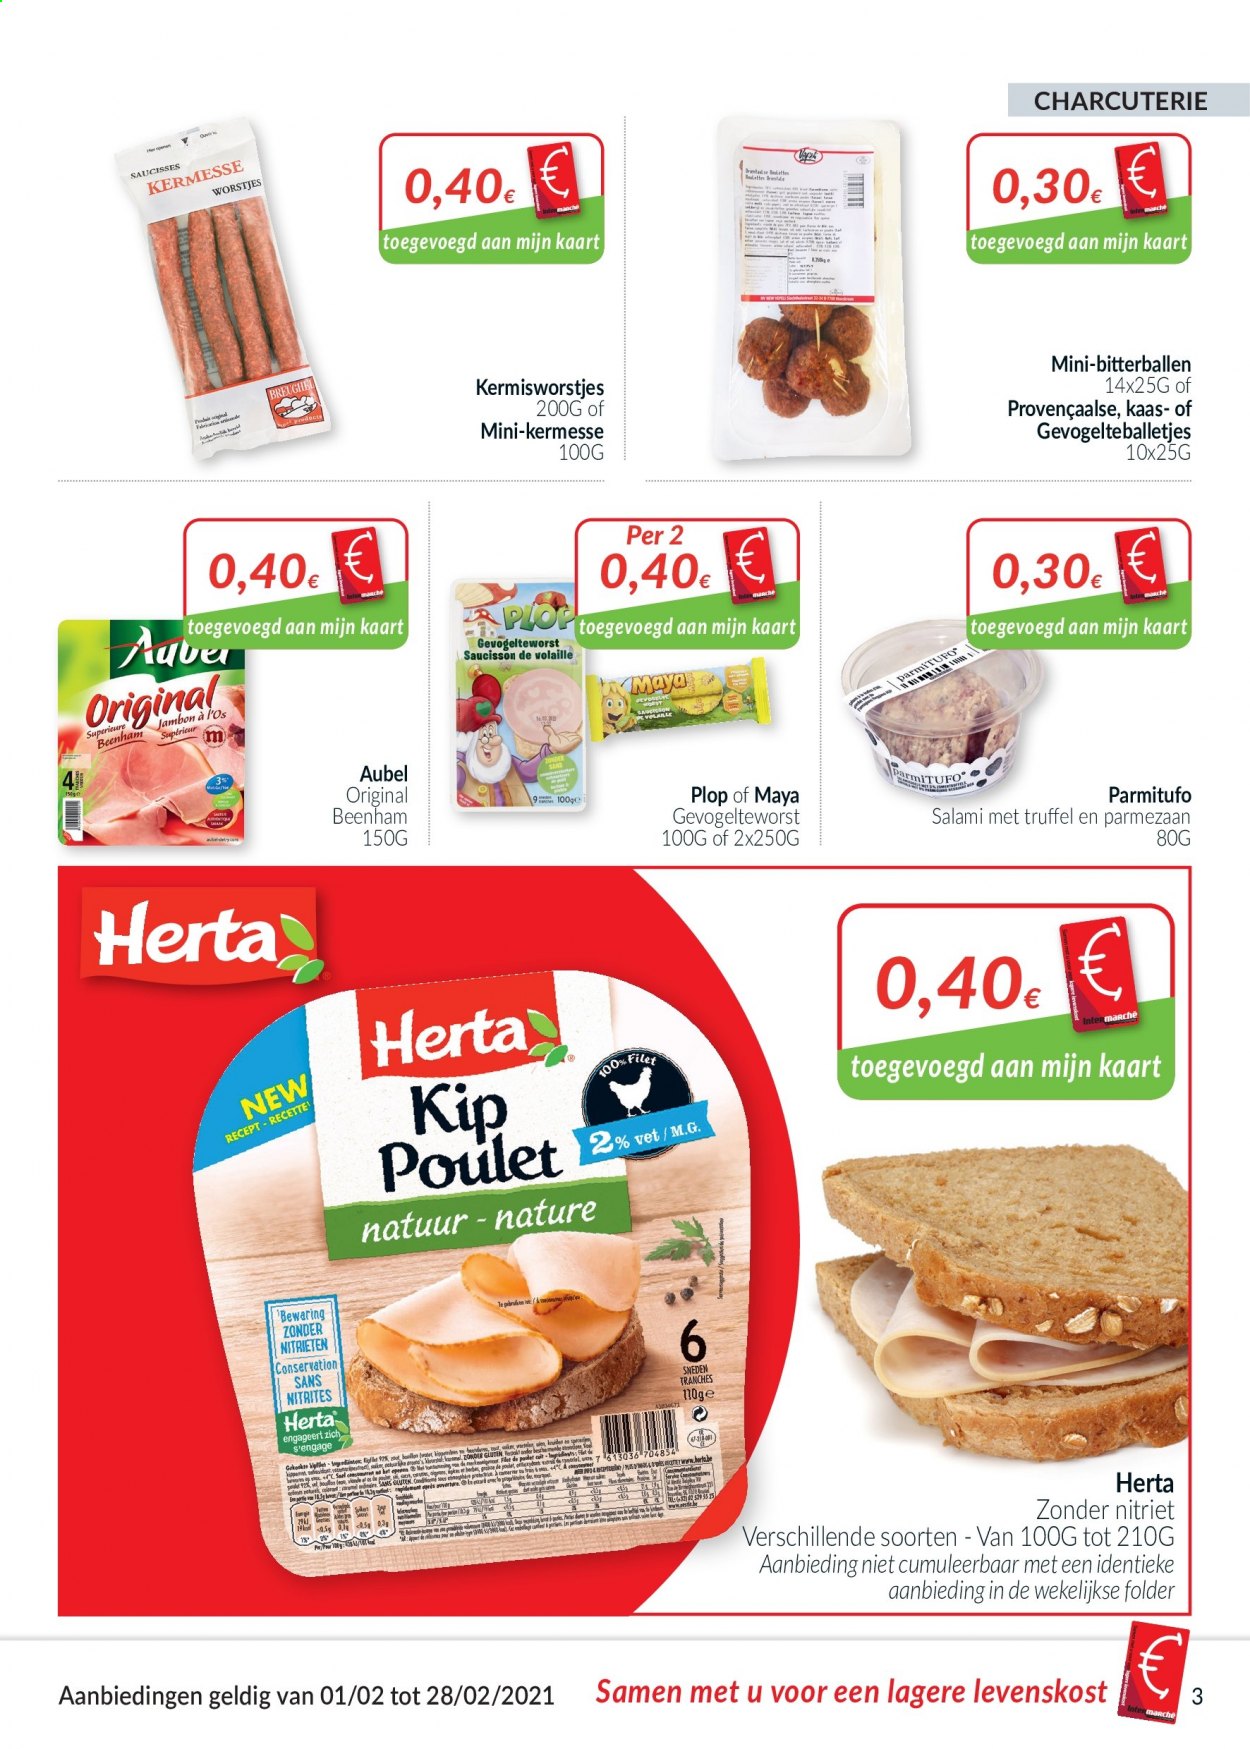 thumbnail - Intermarché-aanbieding - 01/02/2021 - 28/02/2021 -  producten in de aanbieding - beenham, kaas, salami, suiker, truffel, worstjes. Pagina 3.